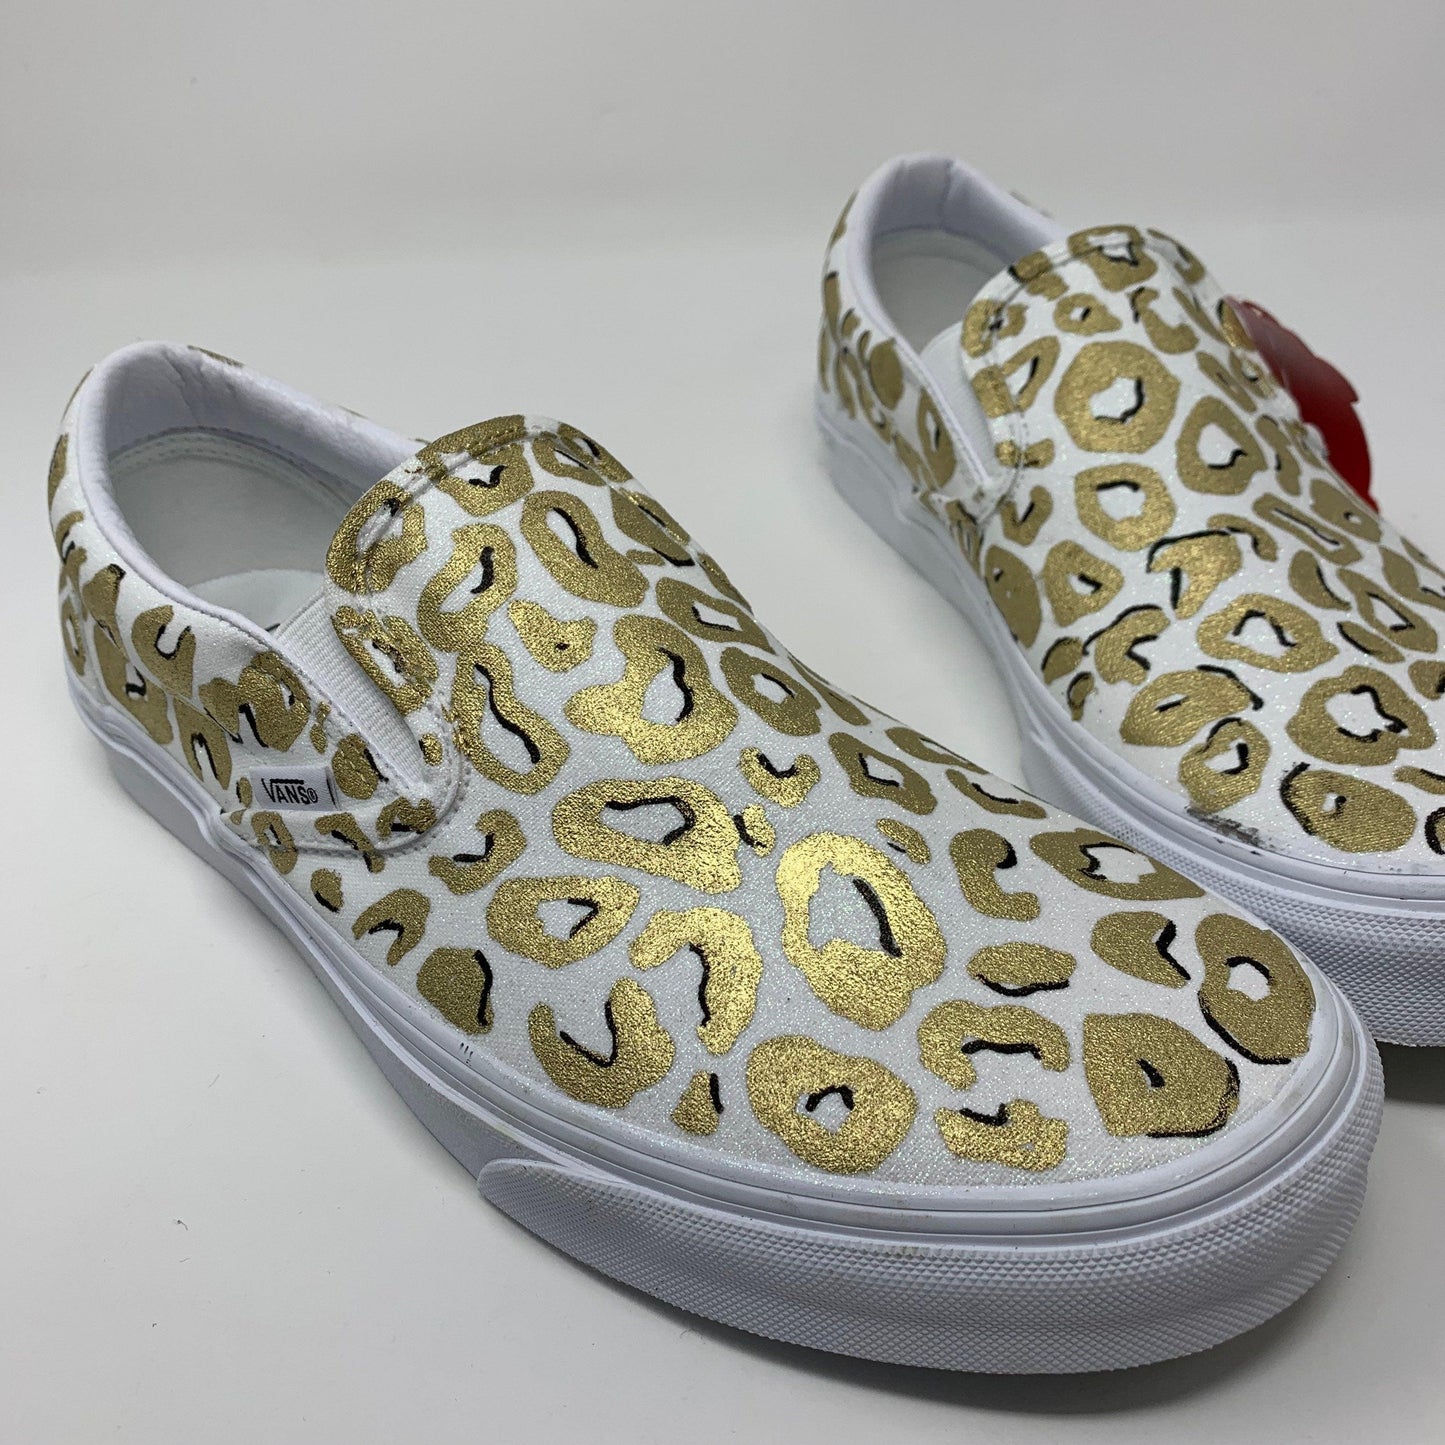 Neon Leopard Print Shoes